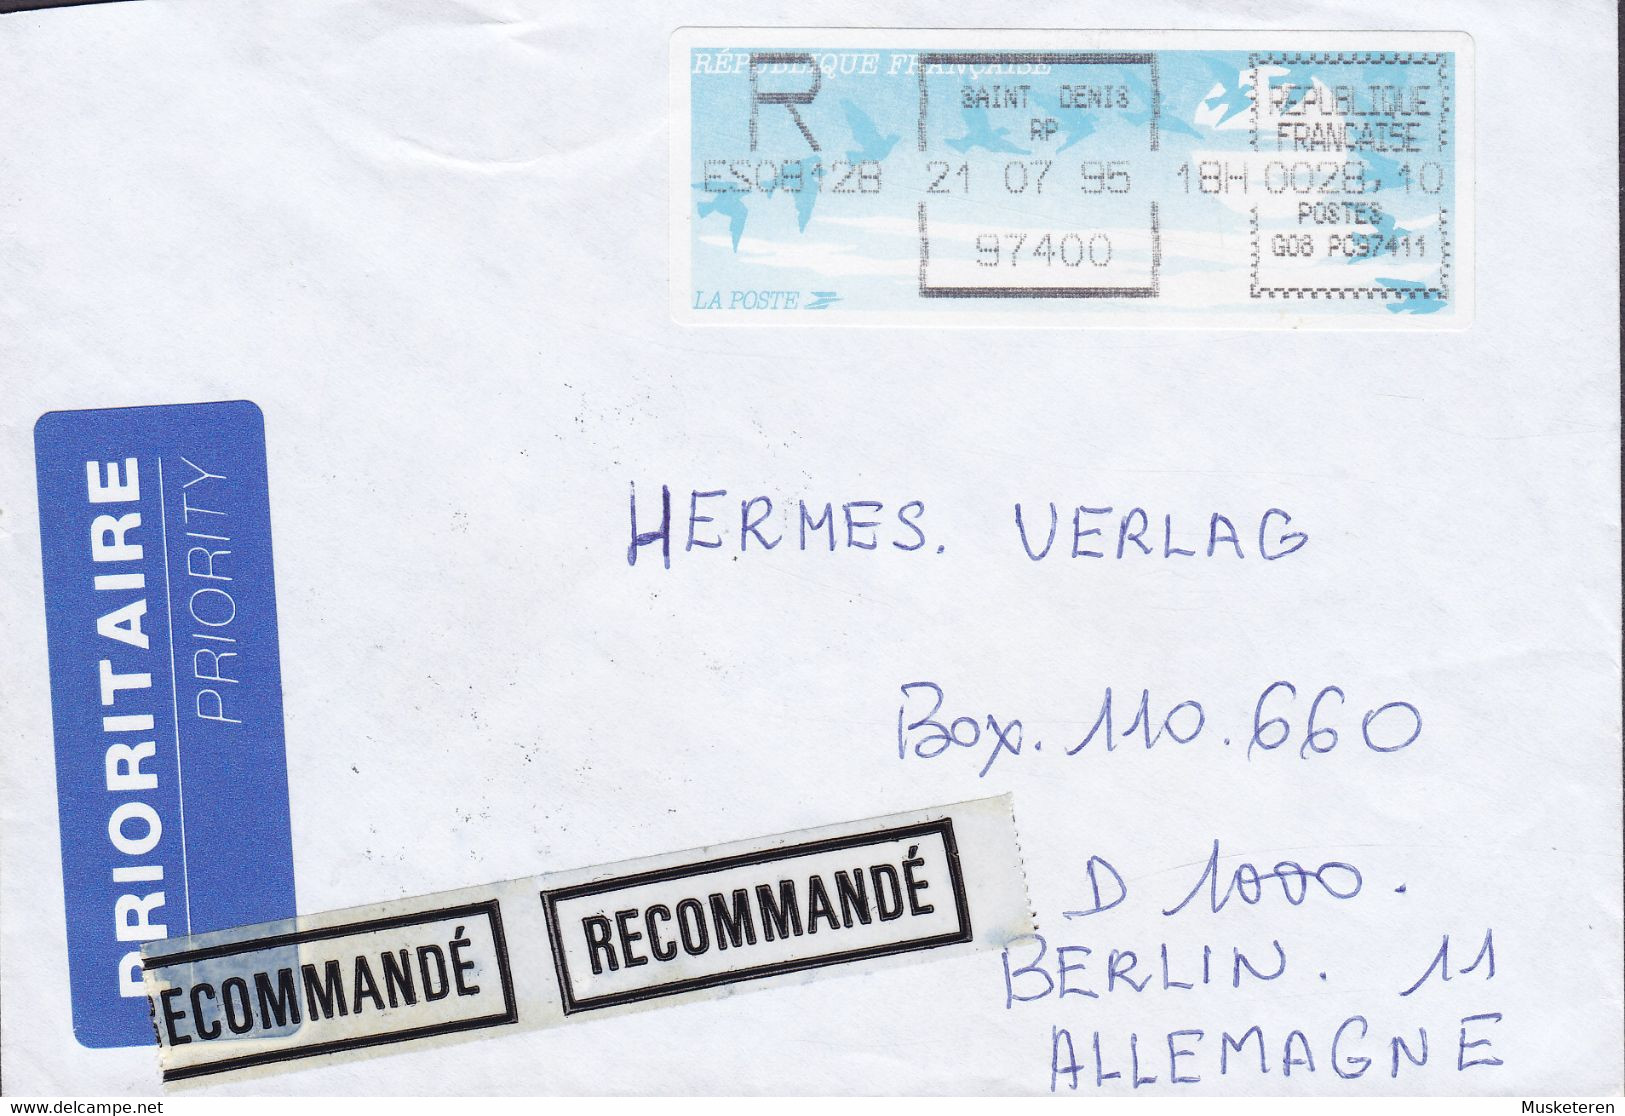 France PRIORITAIRE & Recommandé Labels SAINT DENIS 1995 Cover Lettre BERLIN Germany ATM Frama Label - 1990 « Oiseaux De Jubert »